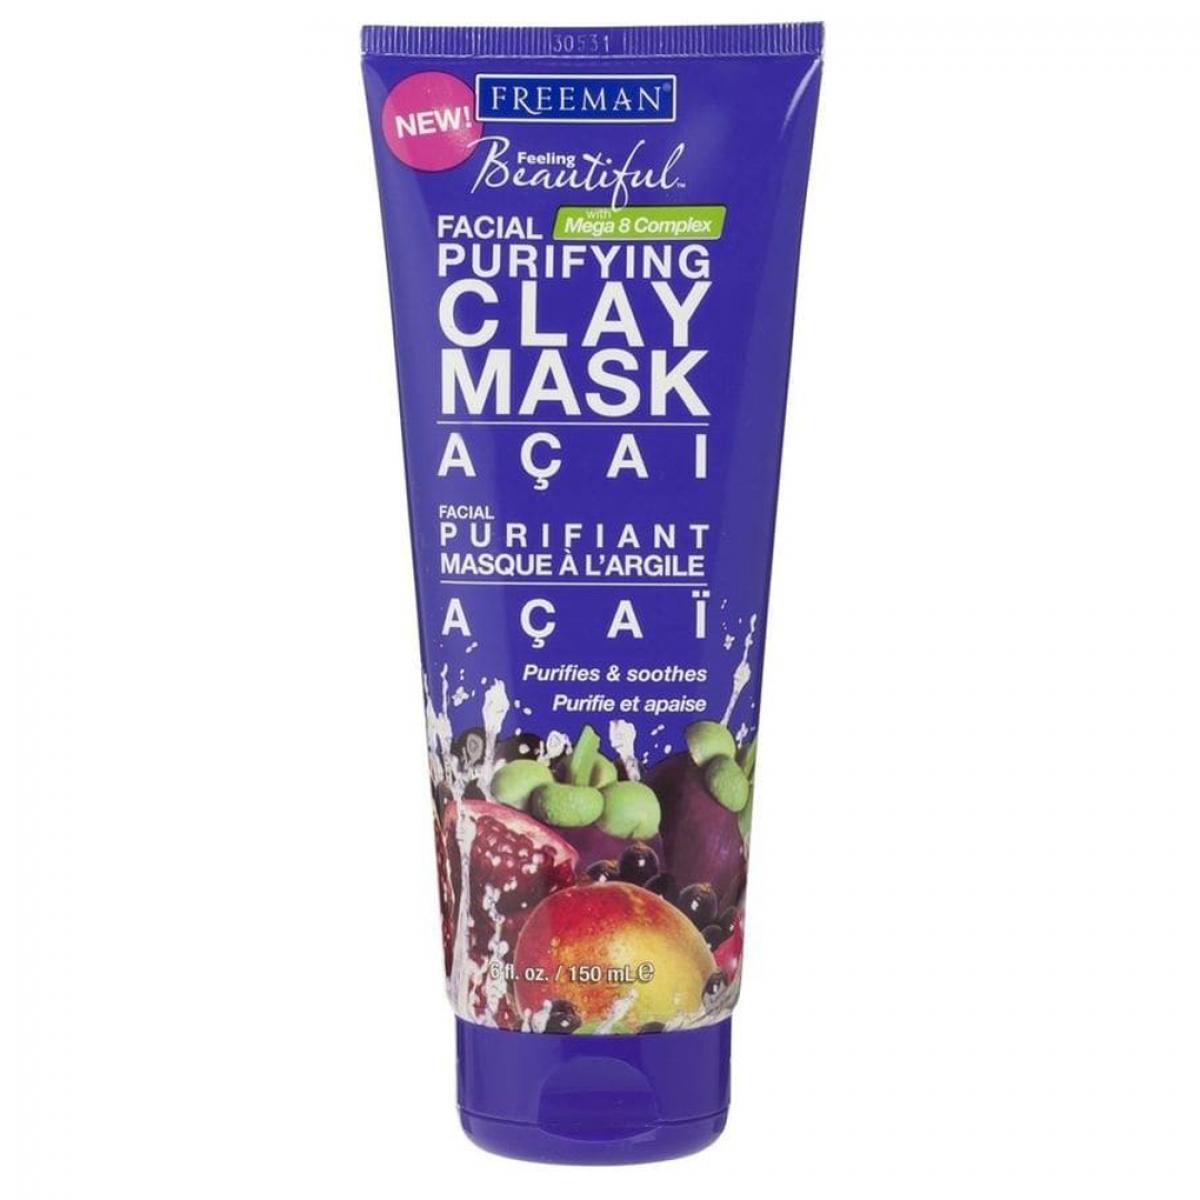 ماسک خاک رسی سوپر فروت - Acai purifying clay facial mask